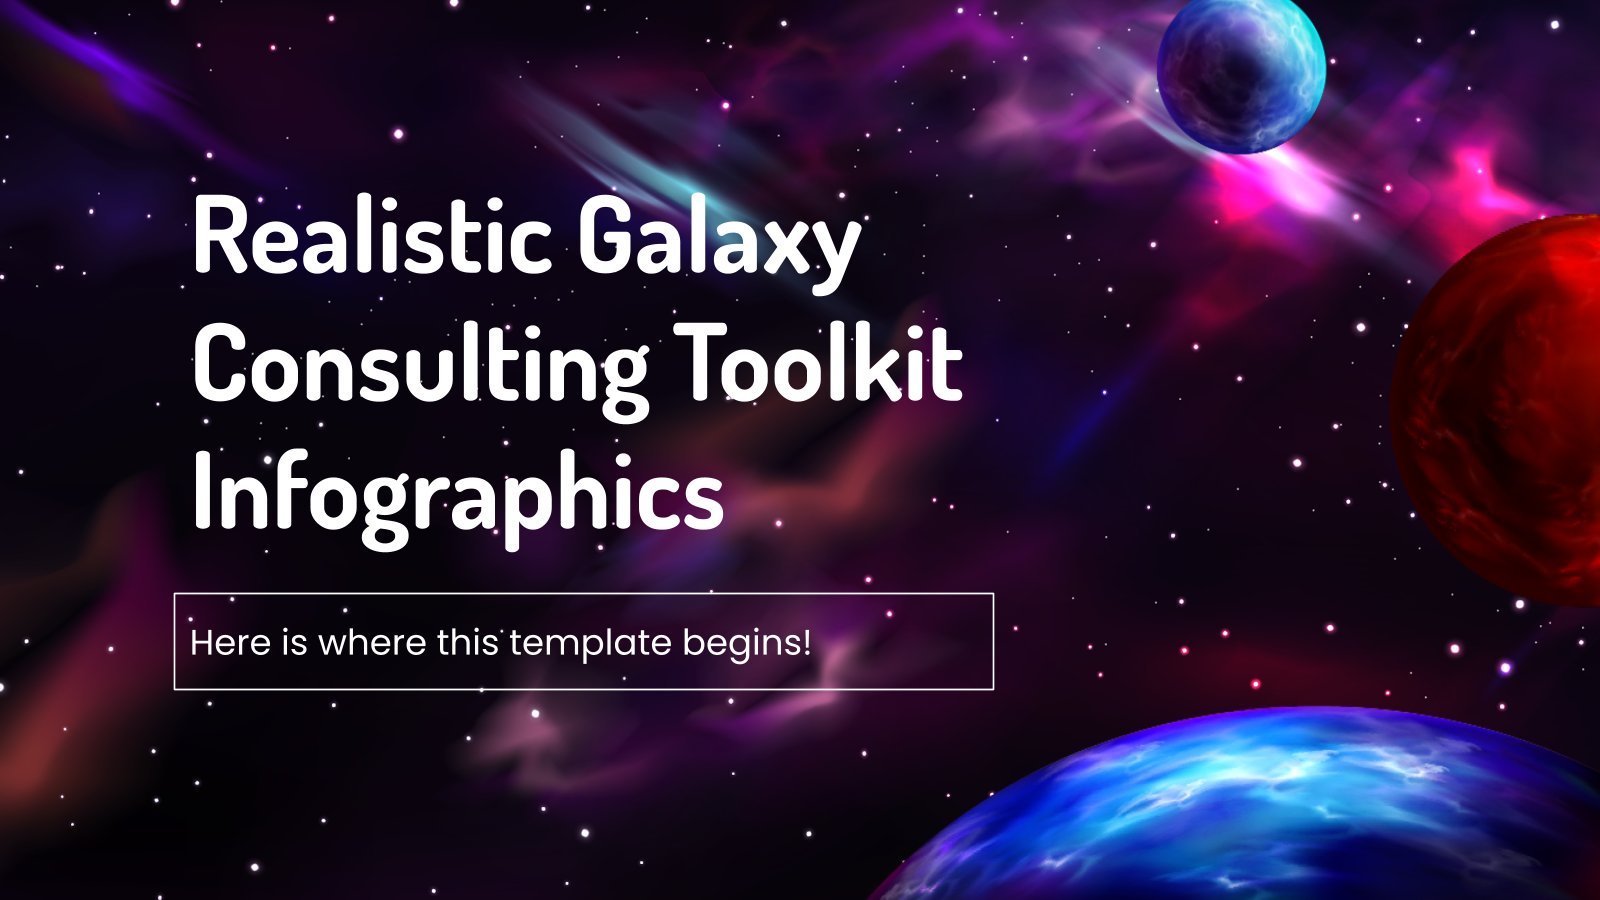 Plantilla de presentación Kit de consultoría galáctica realista - Infografías